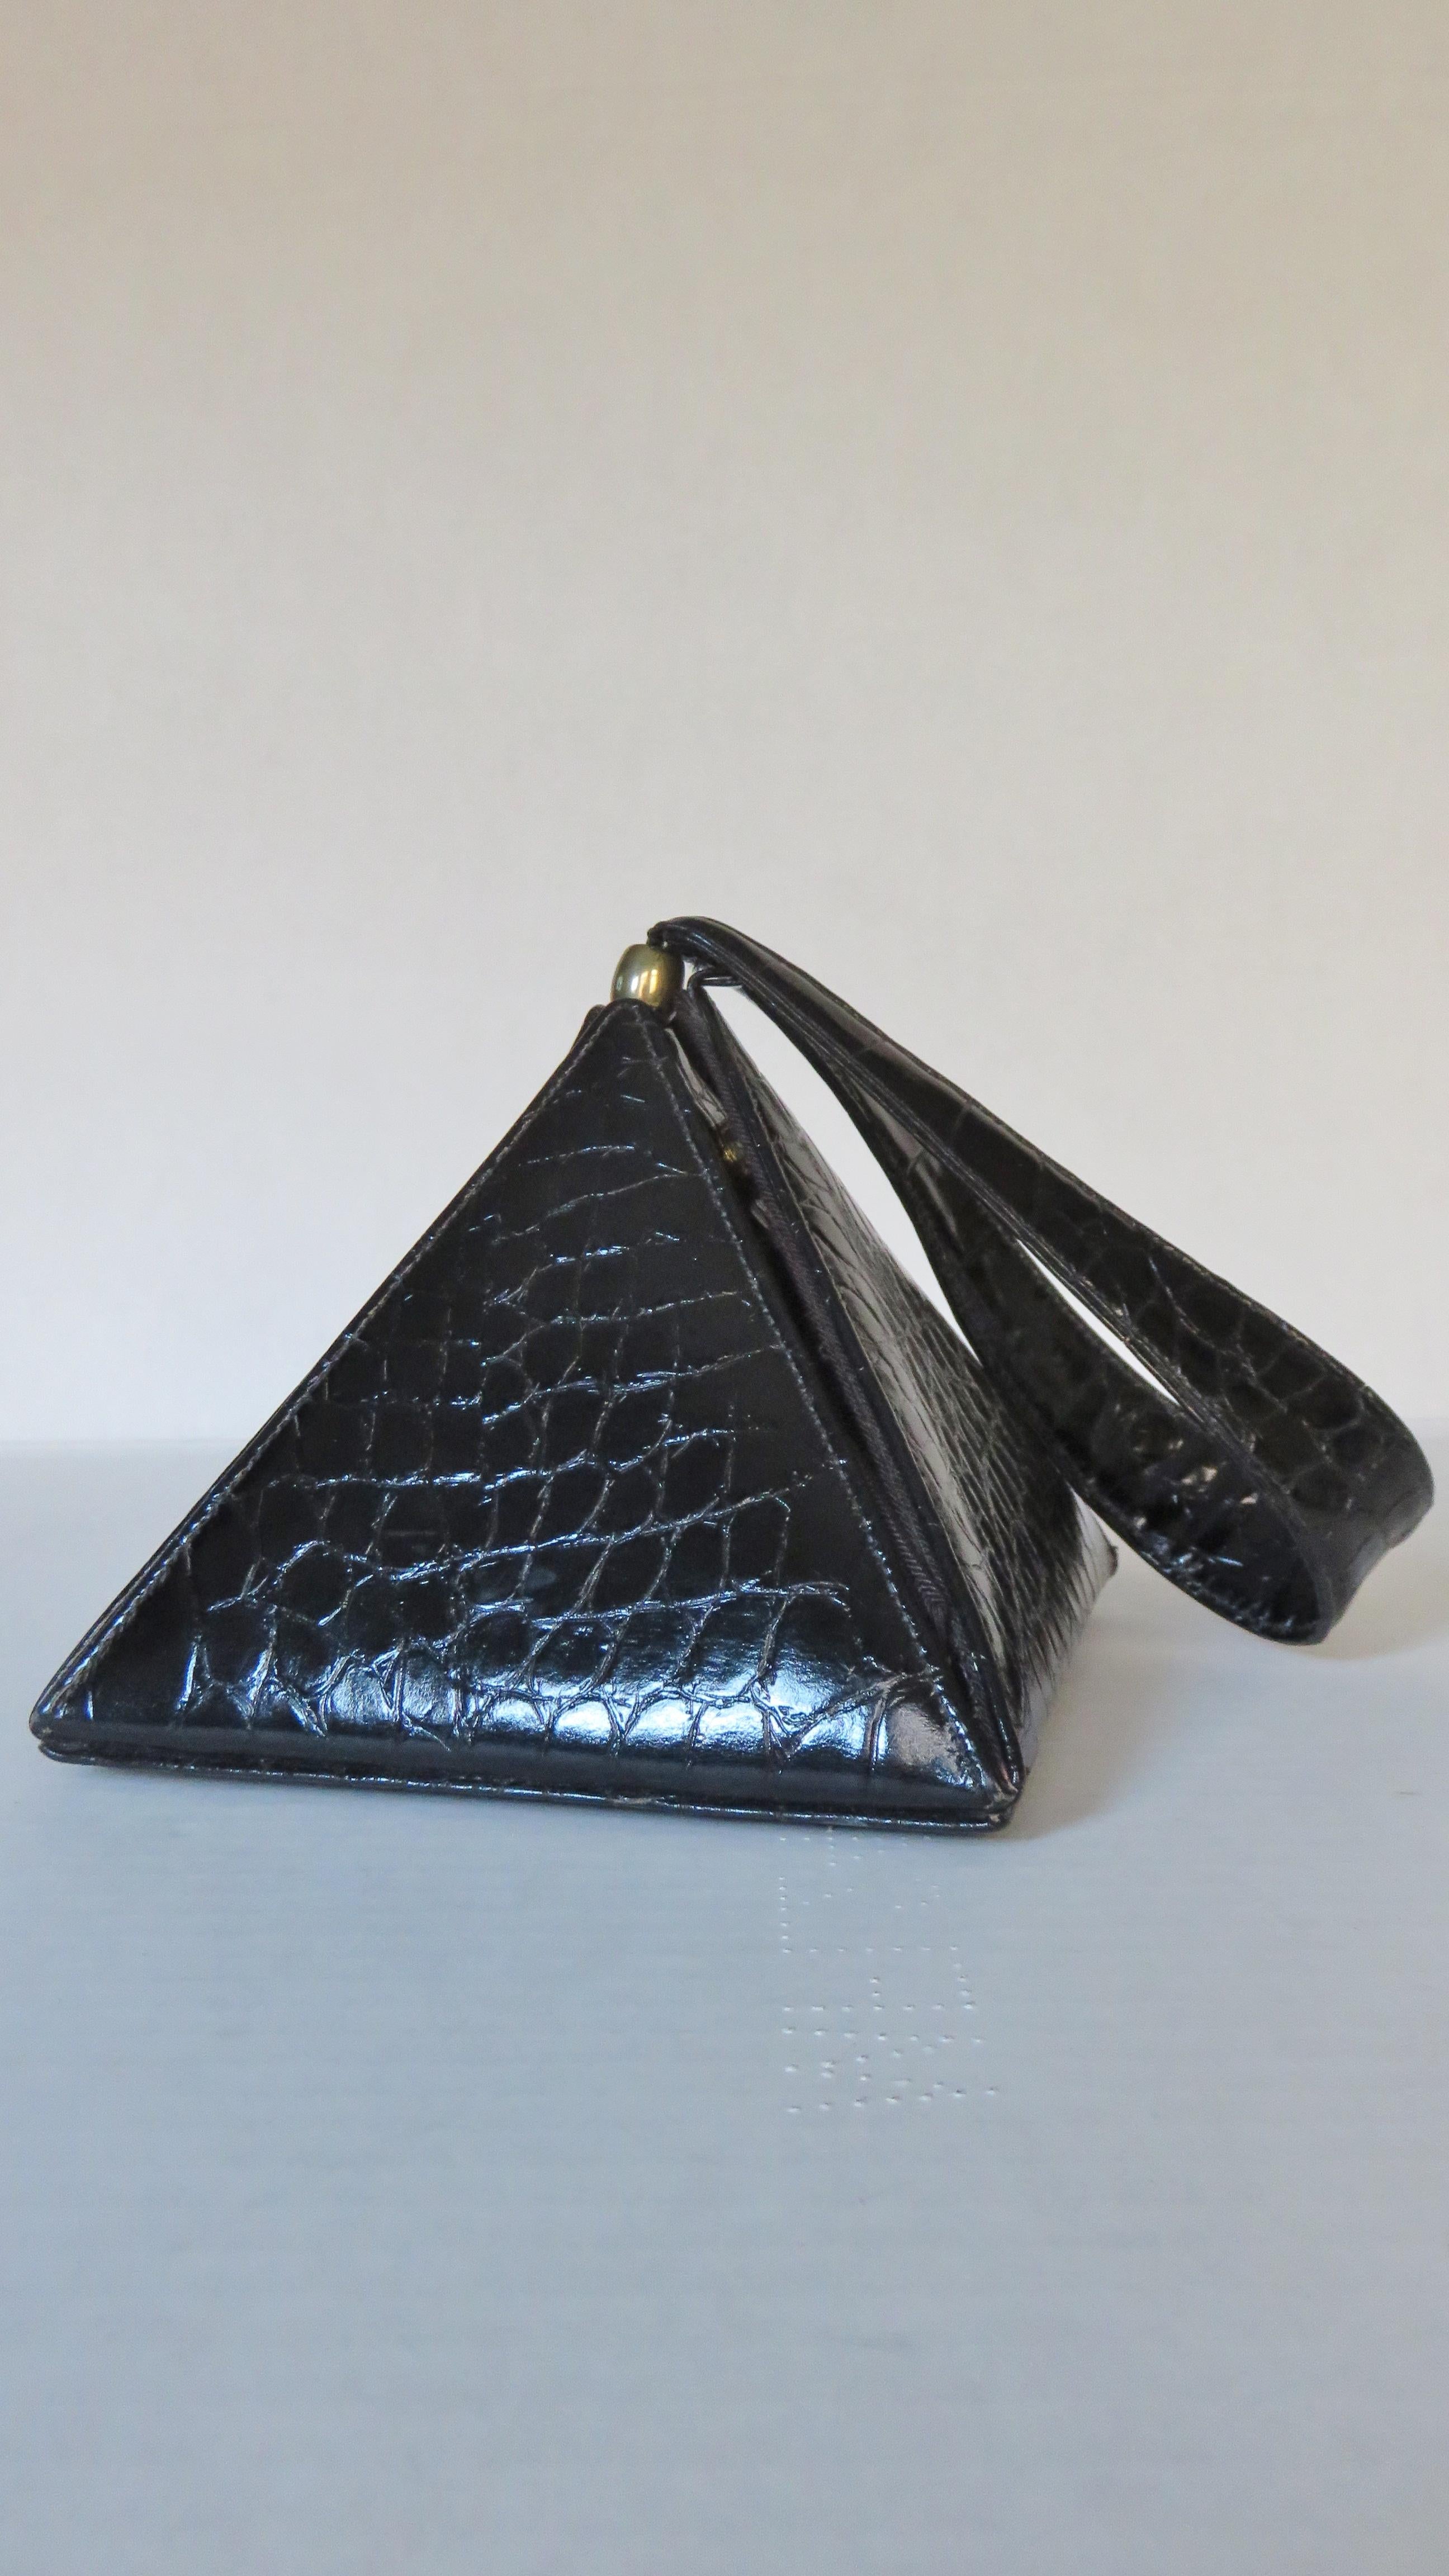 Un magnifique sac à main triangulaire en cuir noir gaufré à l'alligator de Carey Adina.  Il comporte 4 panneaux triangulaires émanant d'une base carrée avec de petits pieds dorés. L'un de ces panneaux s'ouvre à l'aide d'une petite languette et se